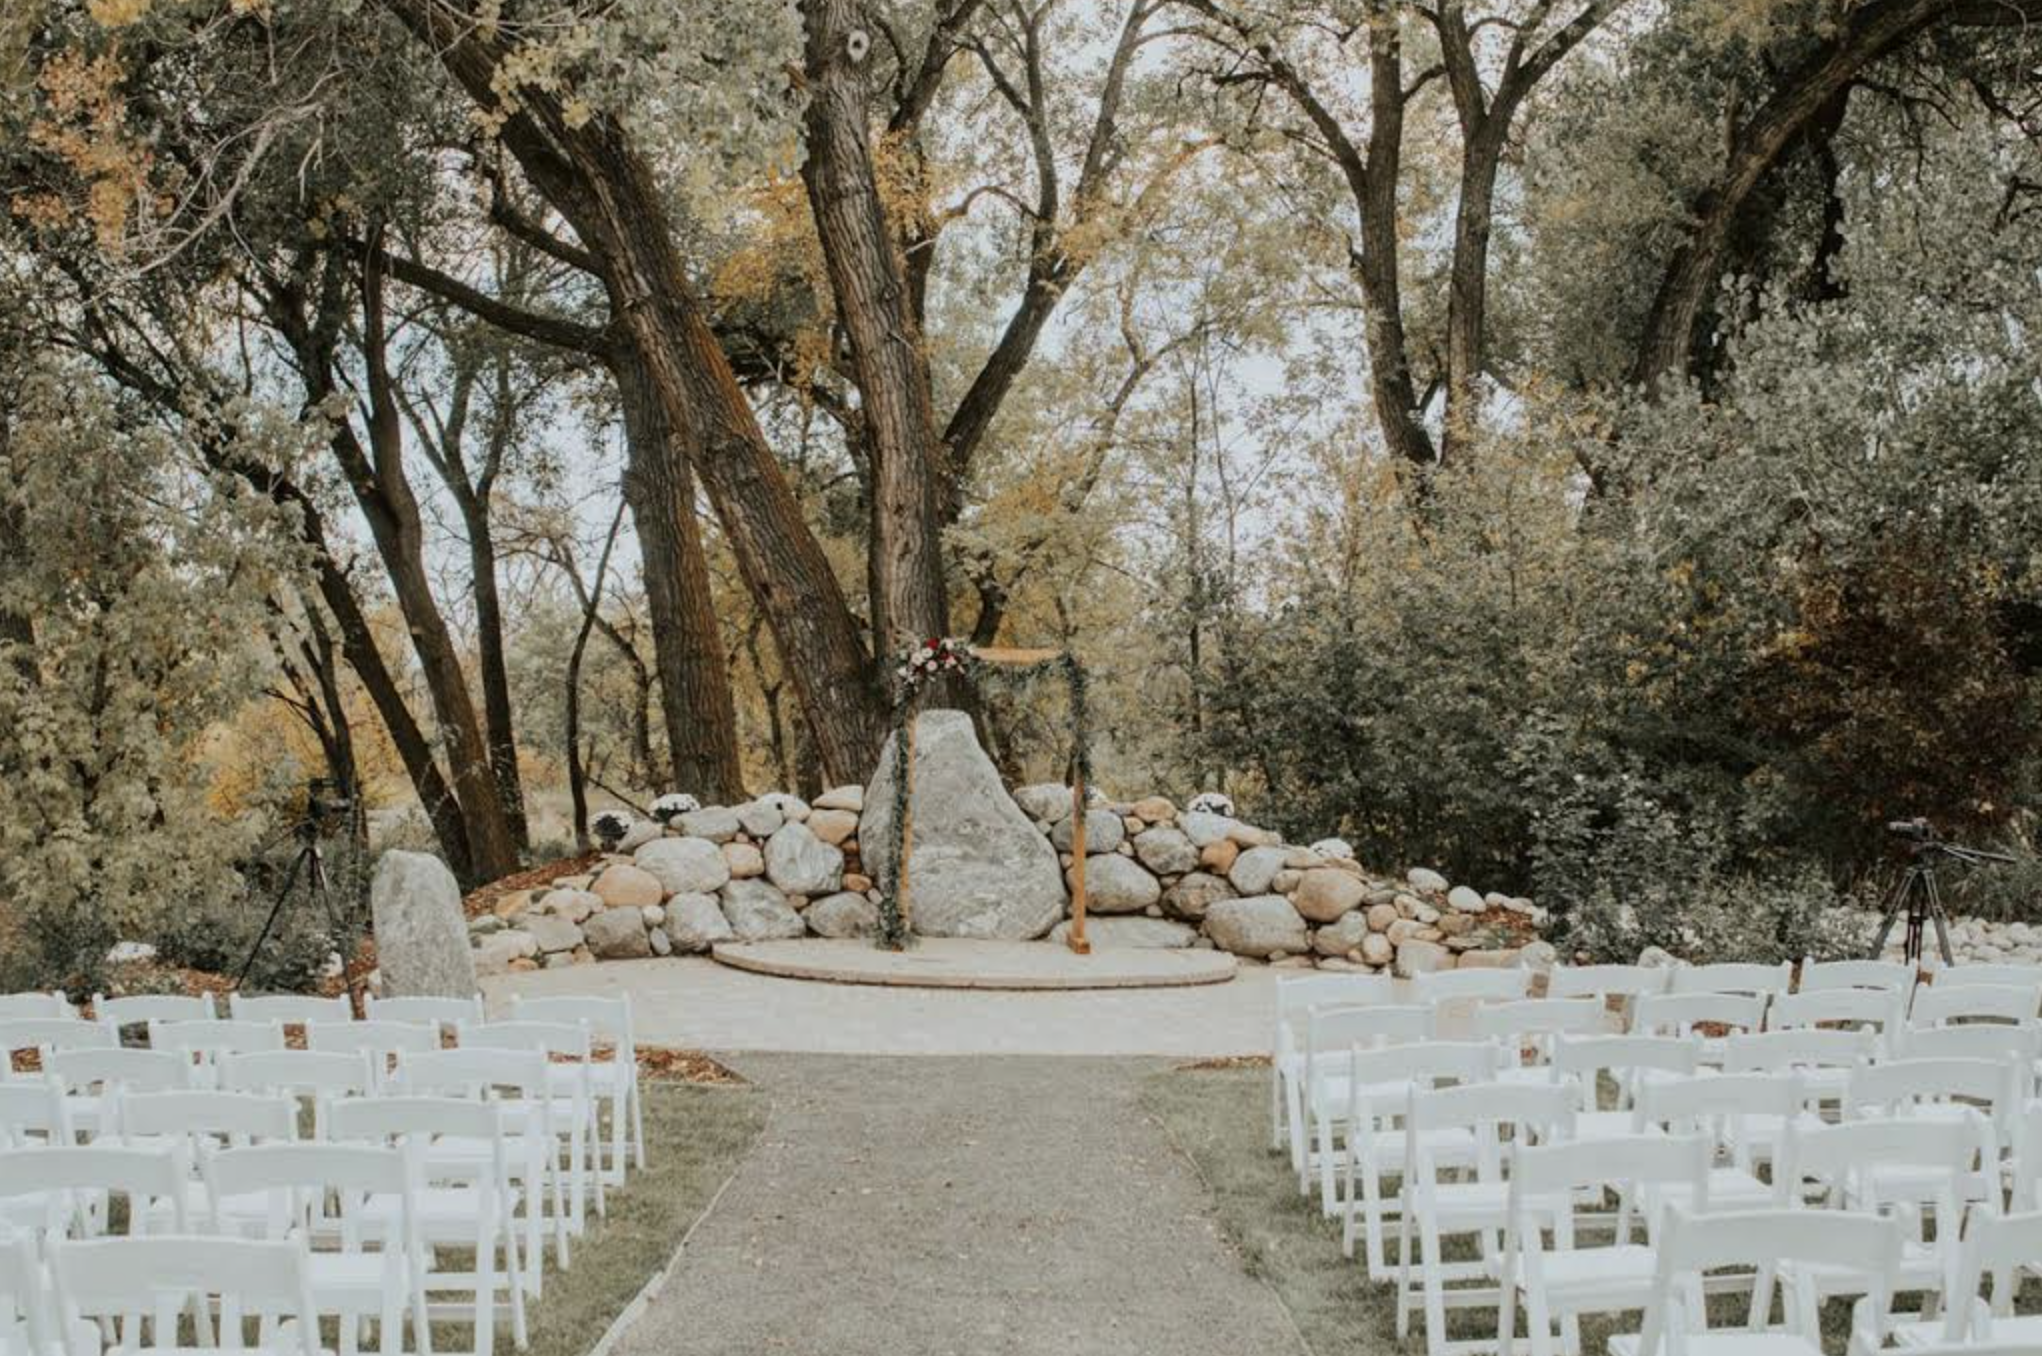 Intimate Colorado Wedding Venues